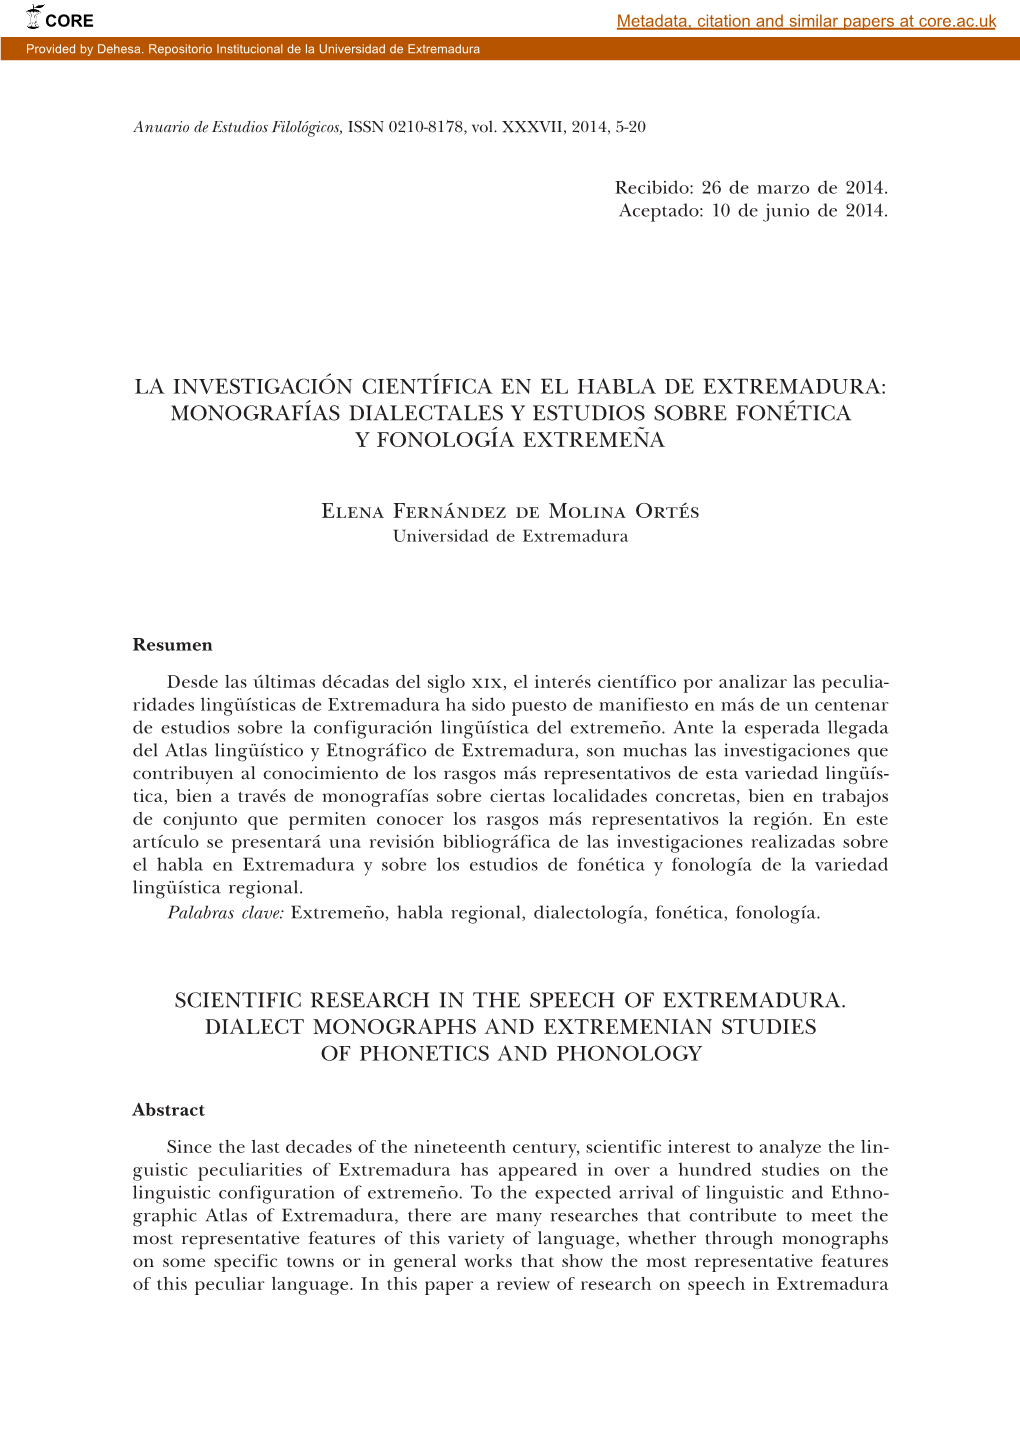 La Investigación Científica En El Habla De Extremadura: Monografías Dialectales Y Estudios Sobre Fonética Y Fonología Extremeña